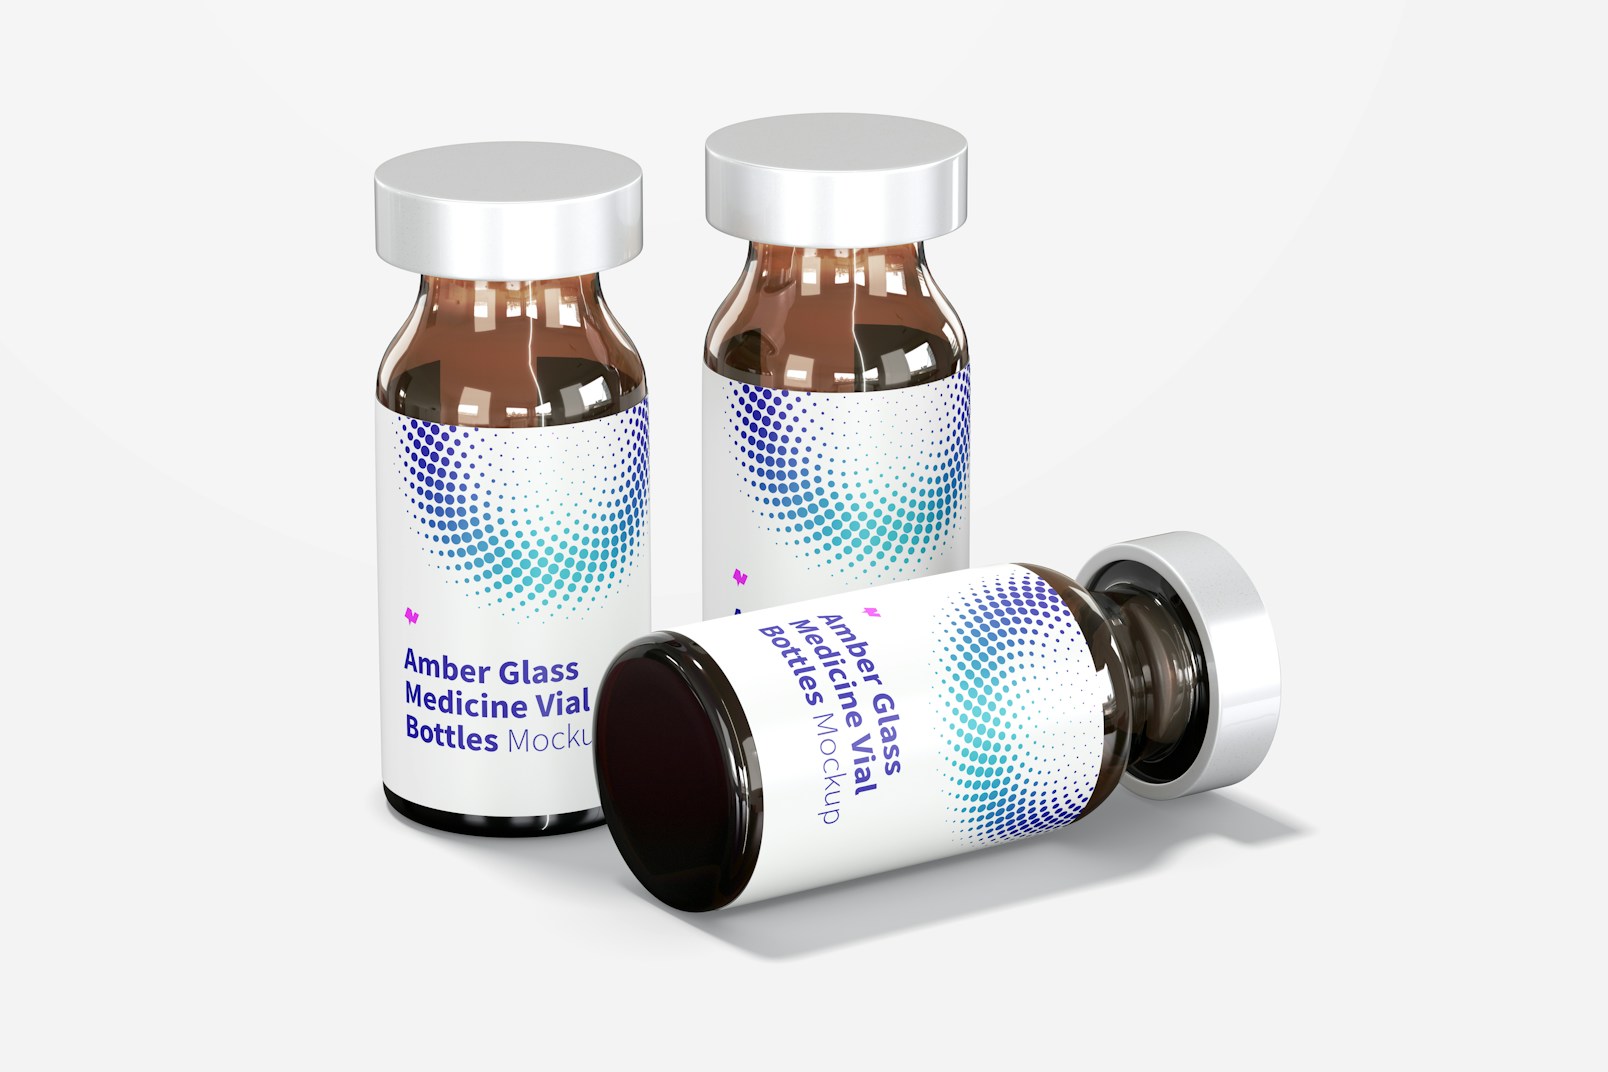 Amber Glass Medicine Vial Bottles Mockup, Dropped